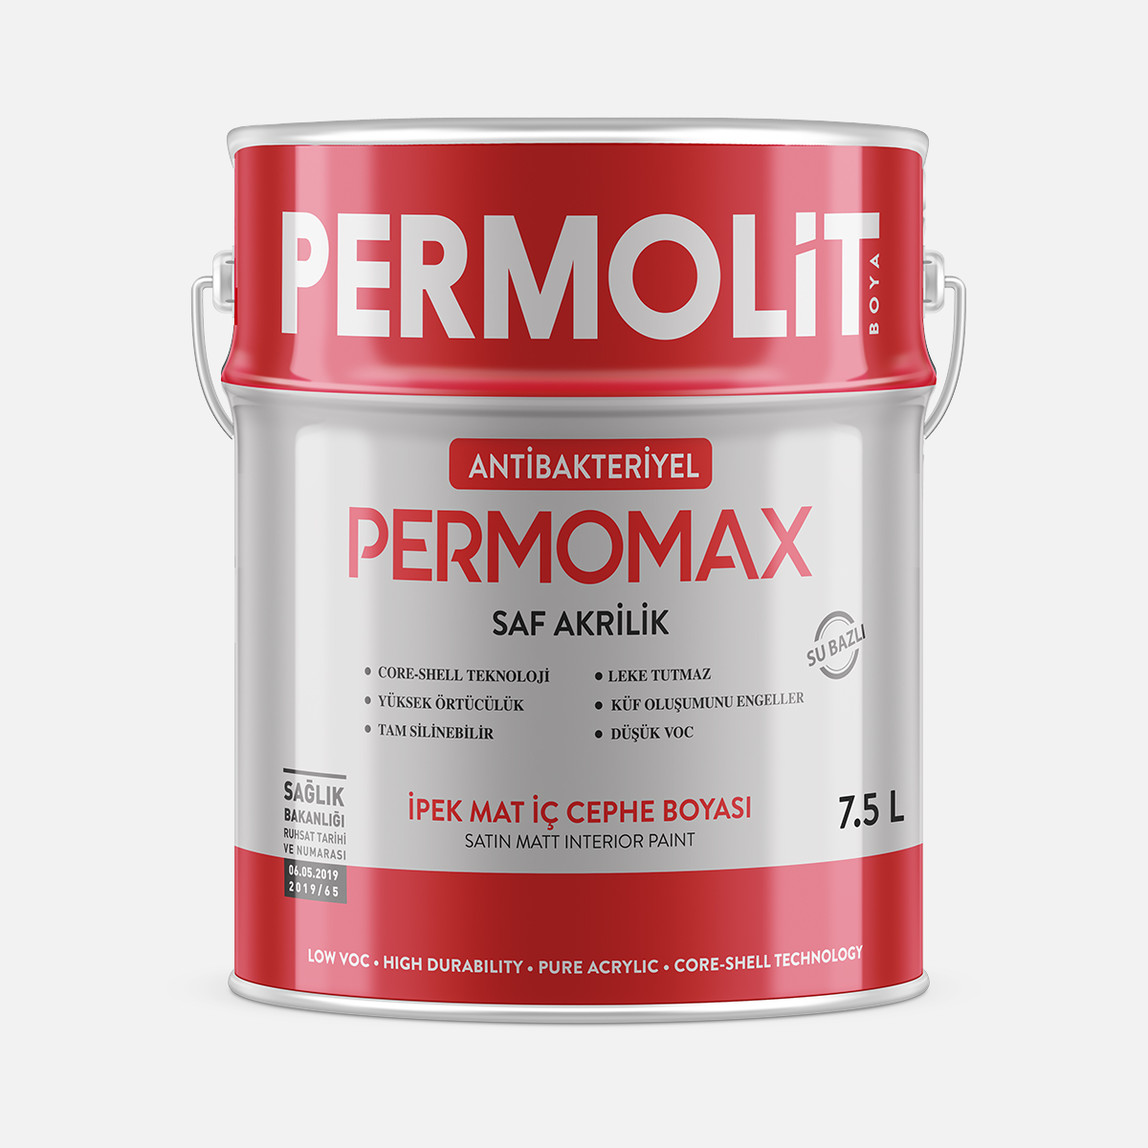    Permolit Permomax Anti-Bakteriyel Beyaz İç Cephe Boyası 7,5l 